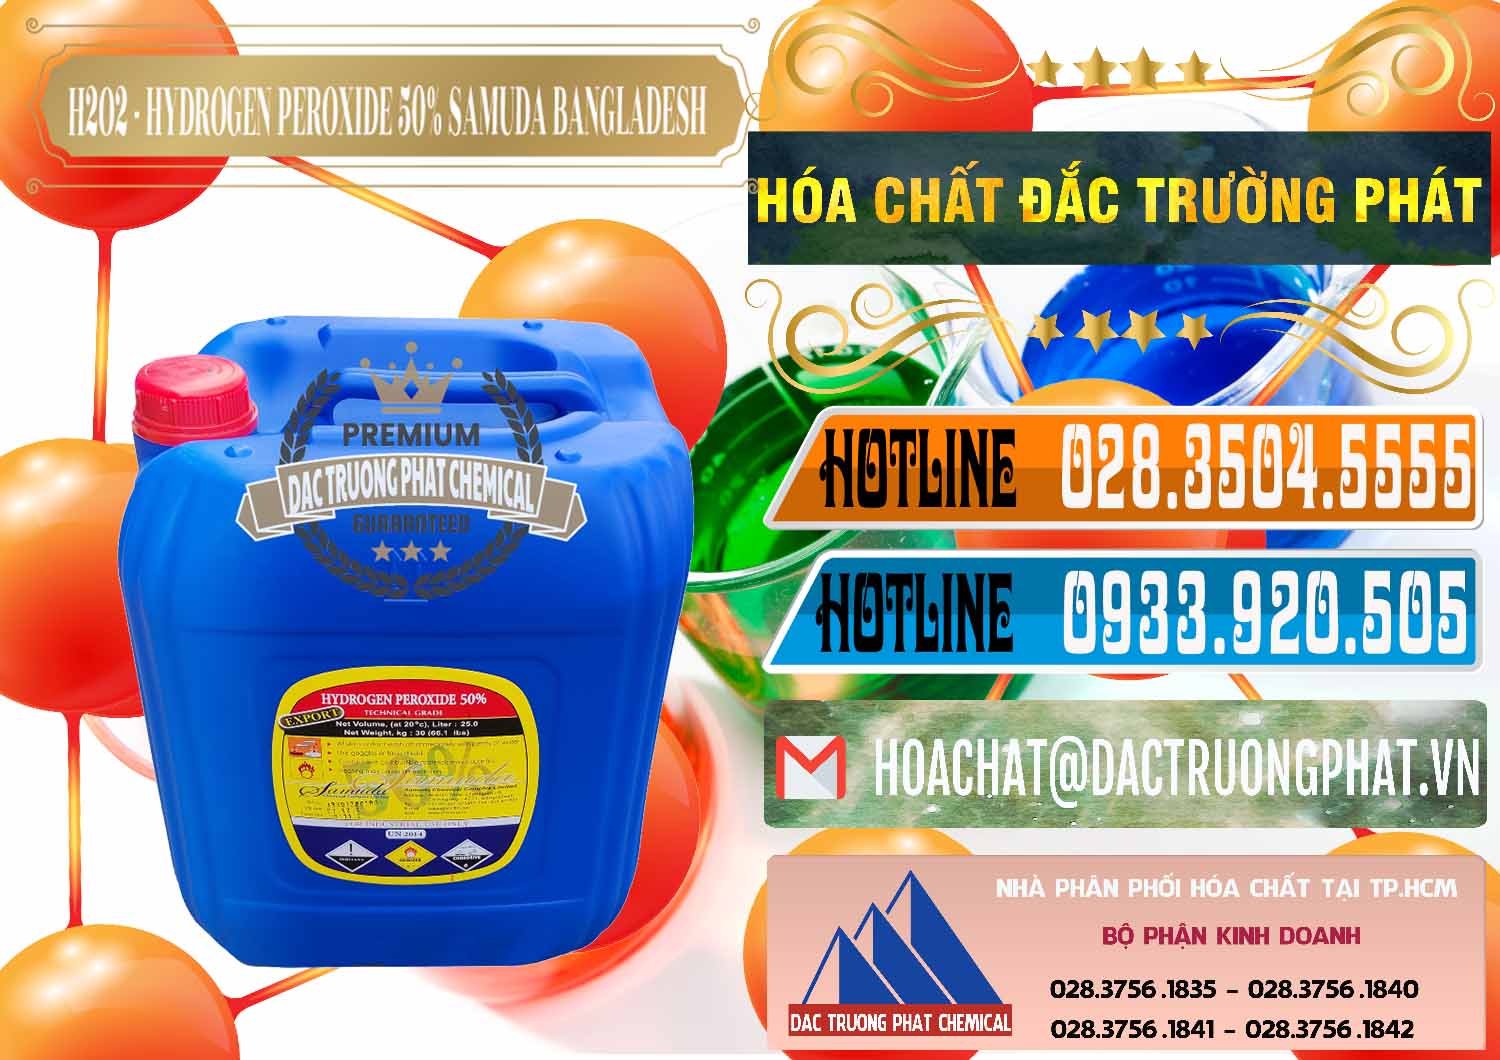 Cty cung cấp ( bán ) H2O2 - Hydrogen Peroxide 50% Samuda Bangladesh - 0077 - Nơi chuyên nhập khẩu - phân phối hóa chất tại TP.HCM - stmp.net